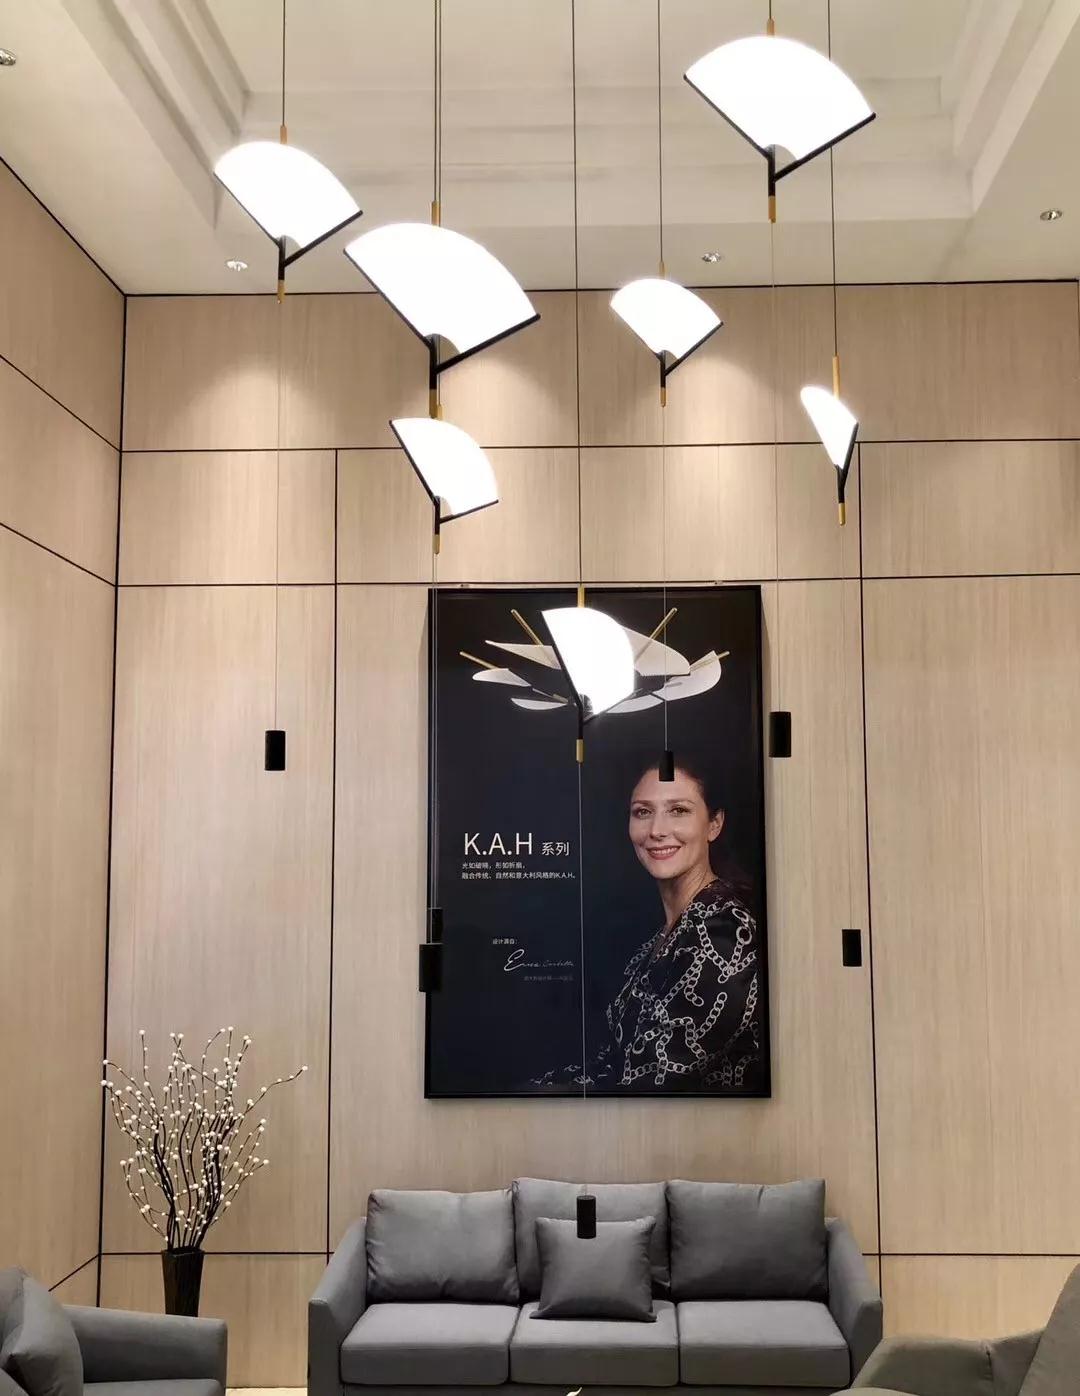 意大利知名设计师柯爱华女士设计的K.A.H系列灯饰产品